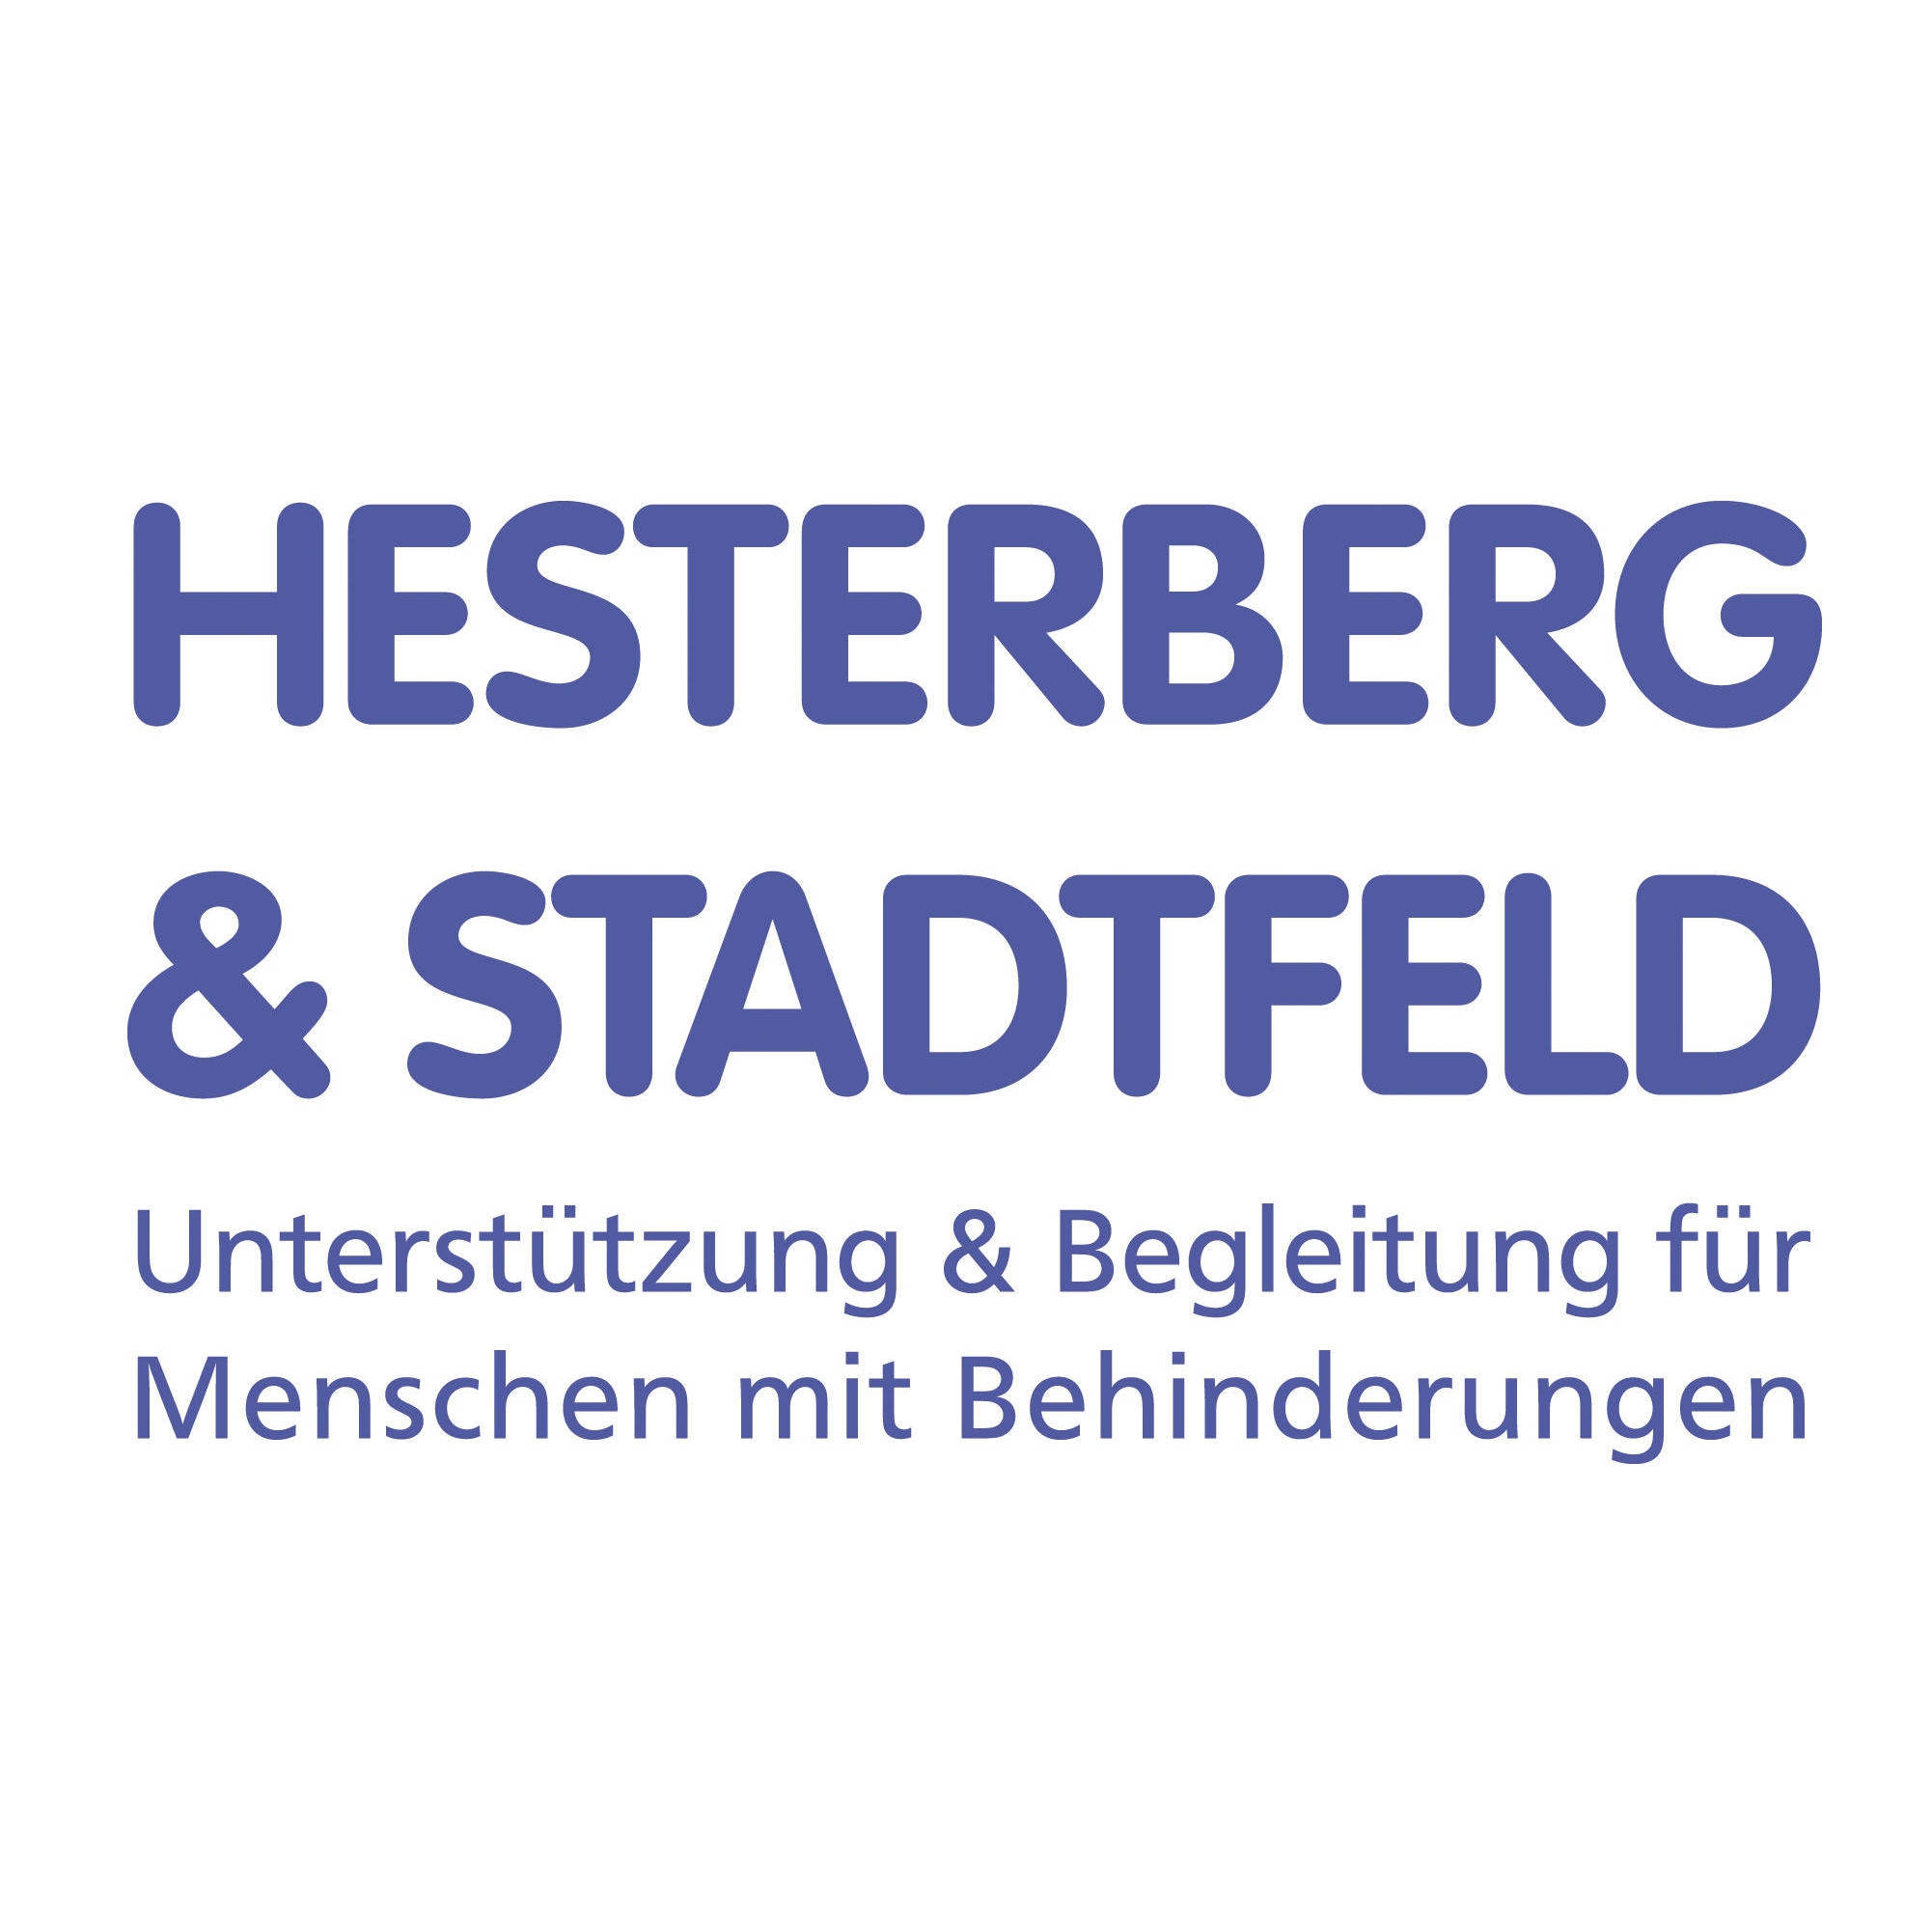 Wohnen im Mühlental 6-8, Schleswig, Hesterberg & Stadtfeld gGmbH in Schleswig - Logo